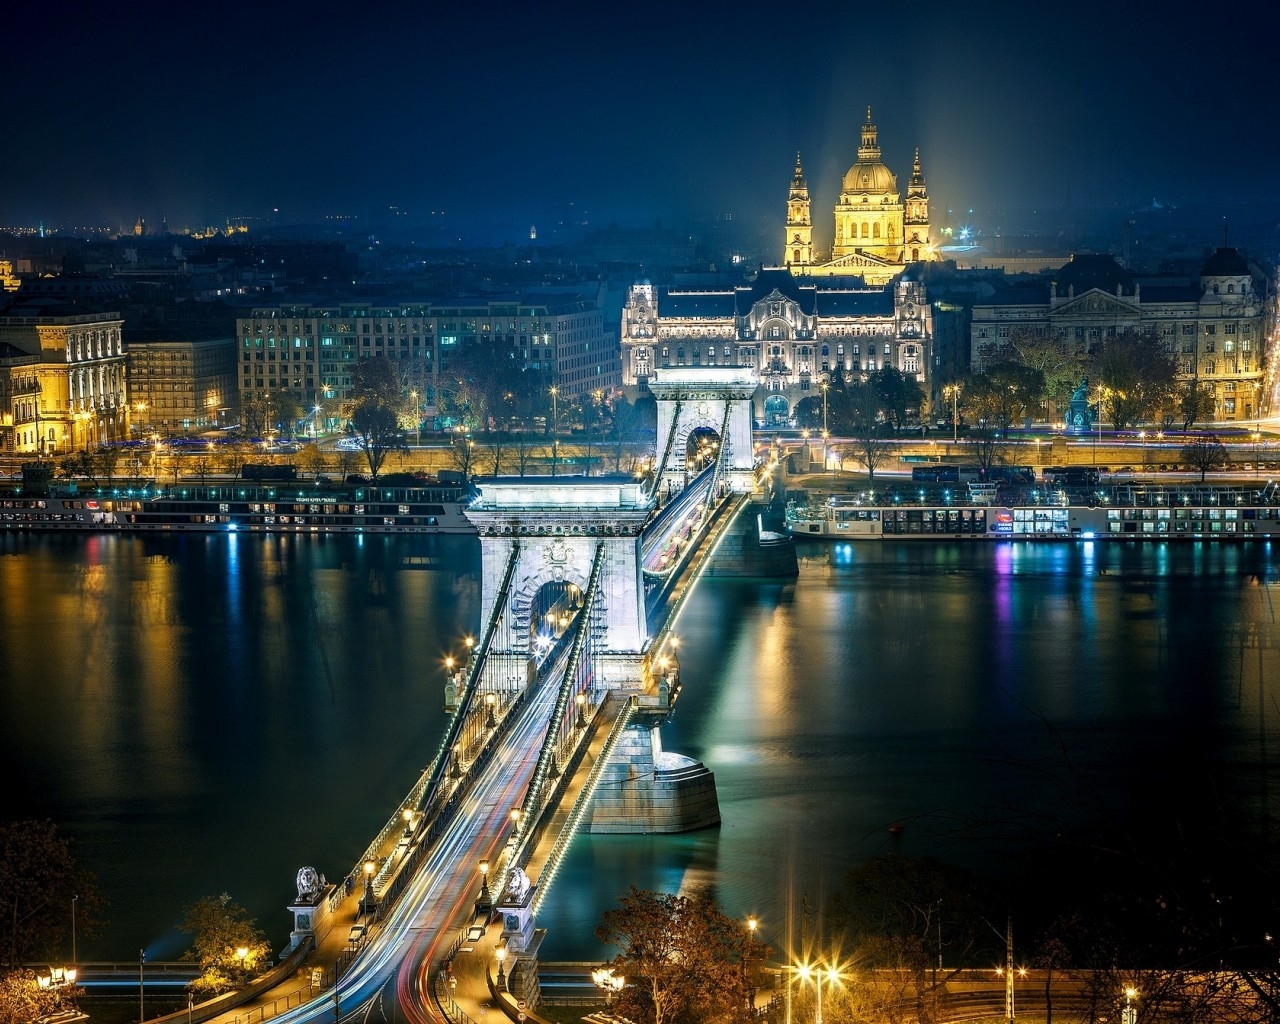 Szechenyi Chain Bridge Budapest for 1280 x 1024 resolution